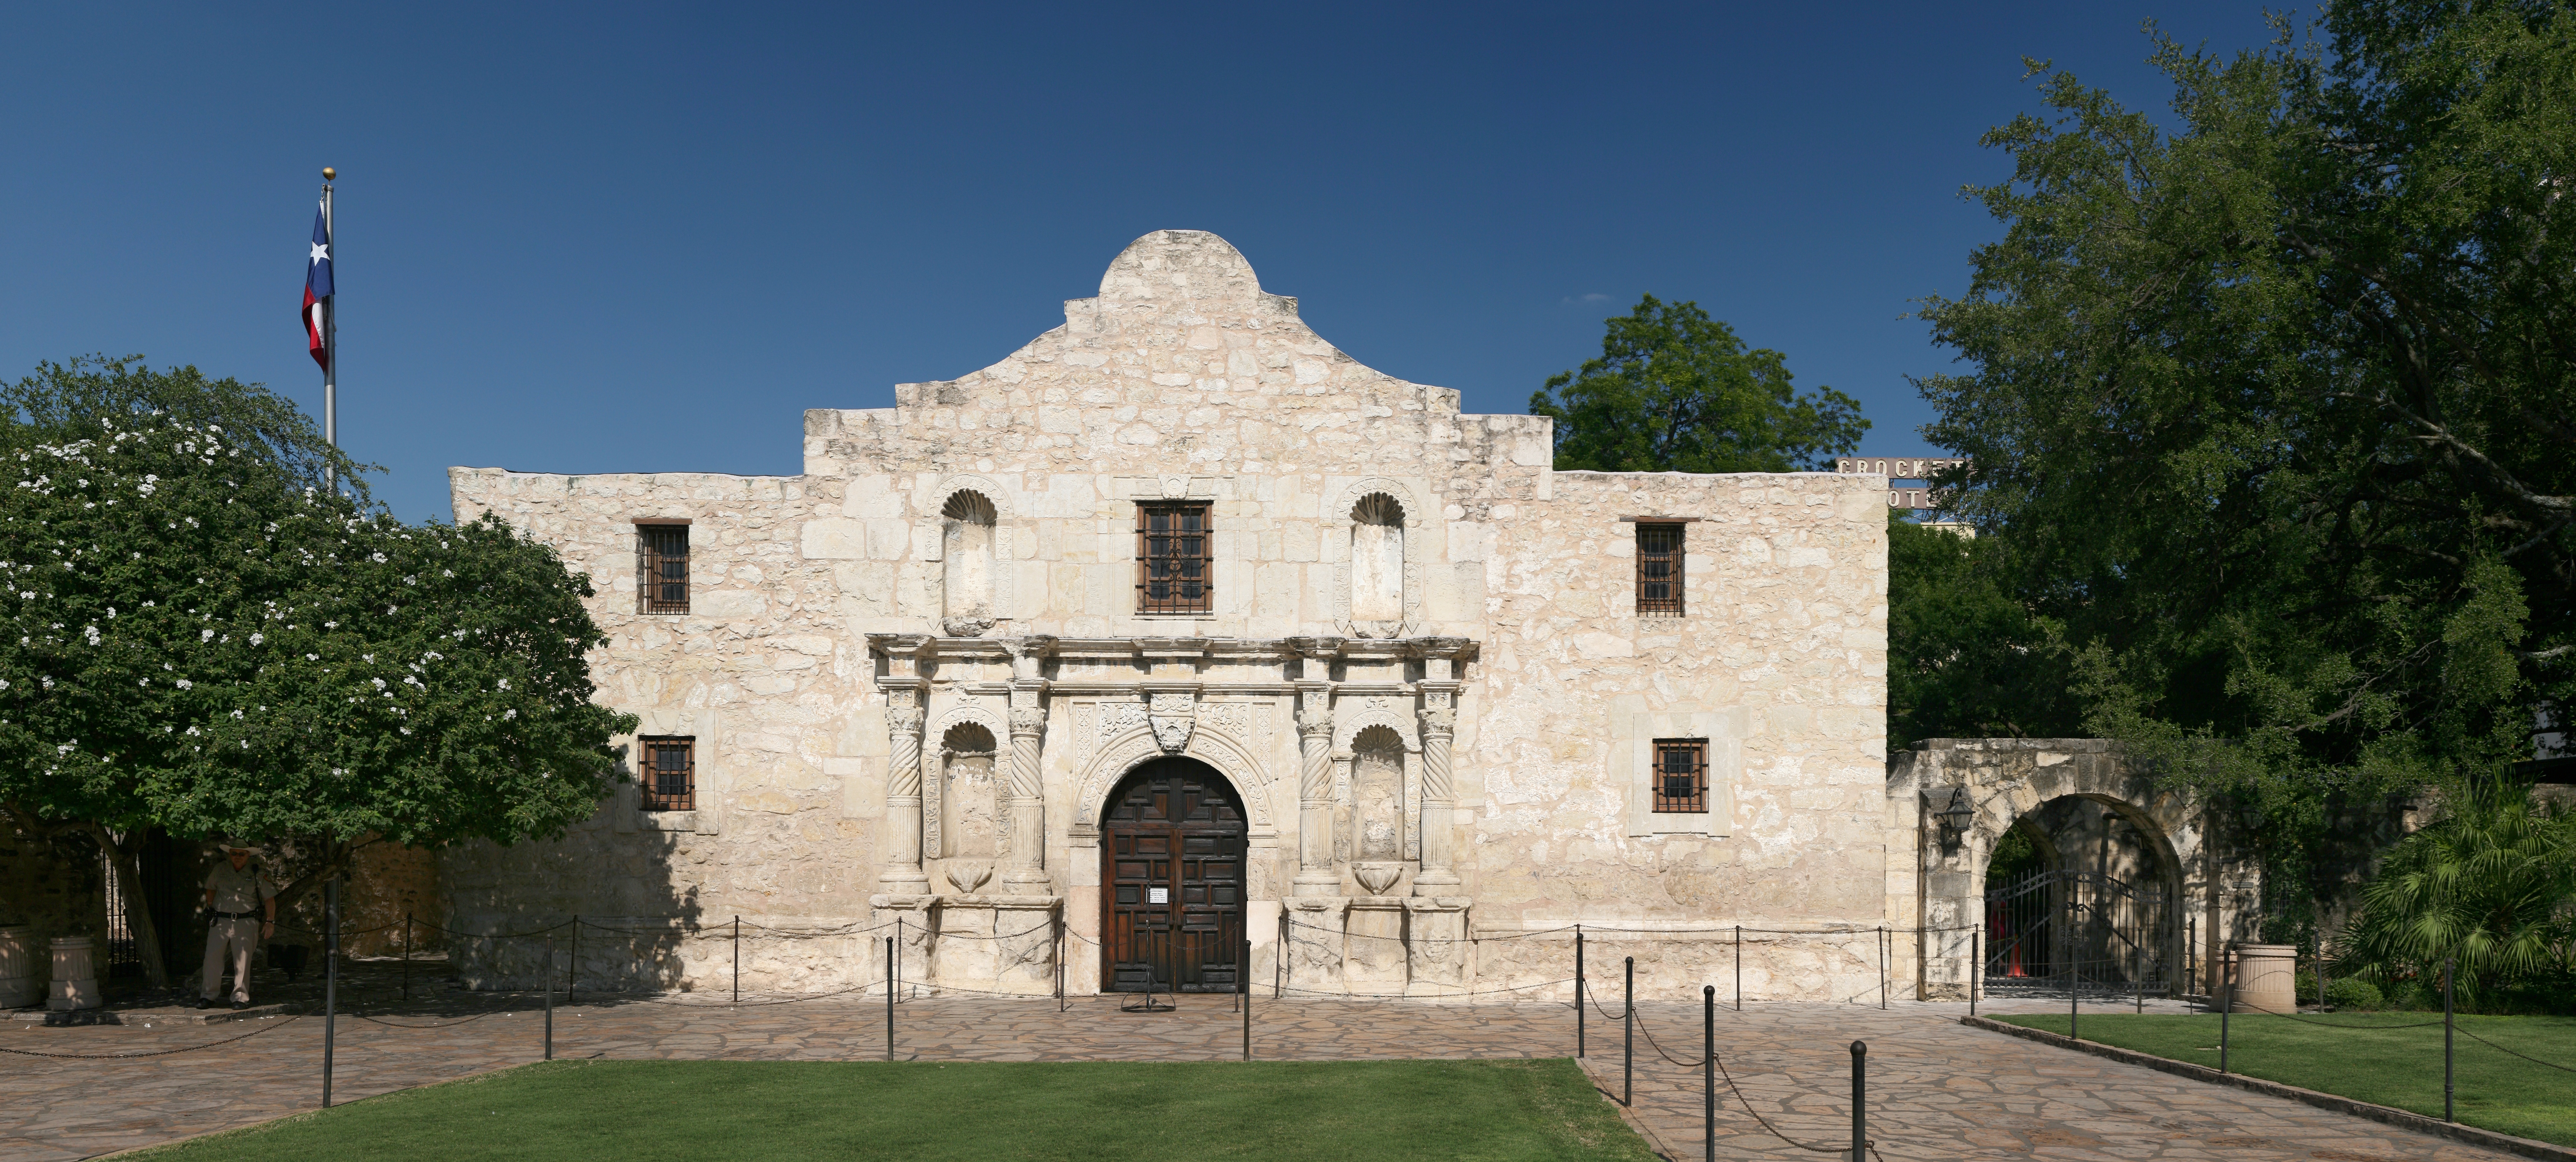 Alamo Mission in San Antonio - Wikipedia